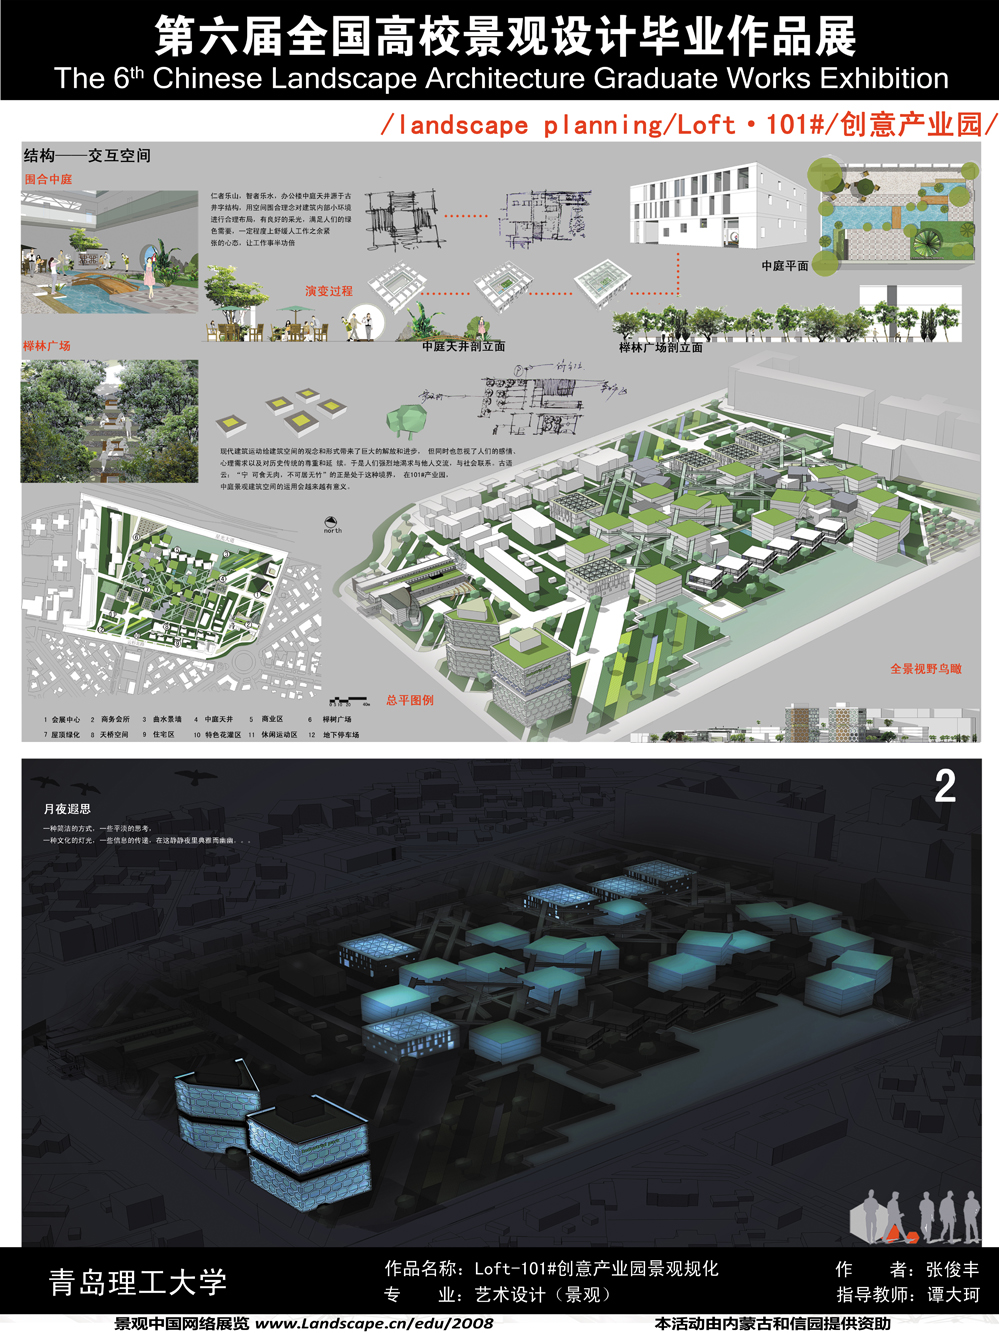 Loft-101#创意产业园景观规划设计-2